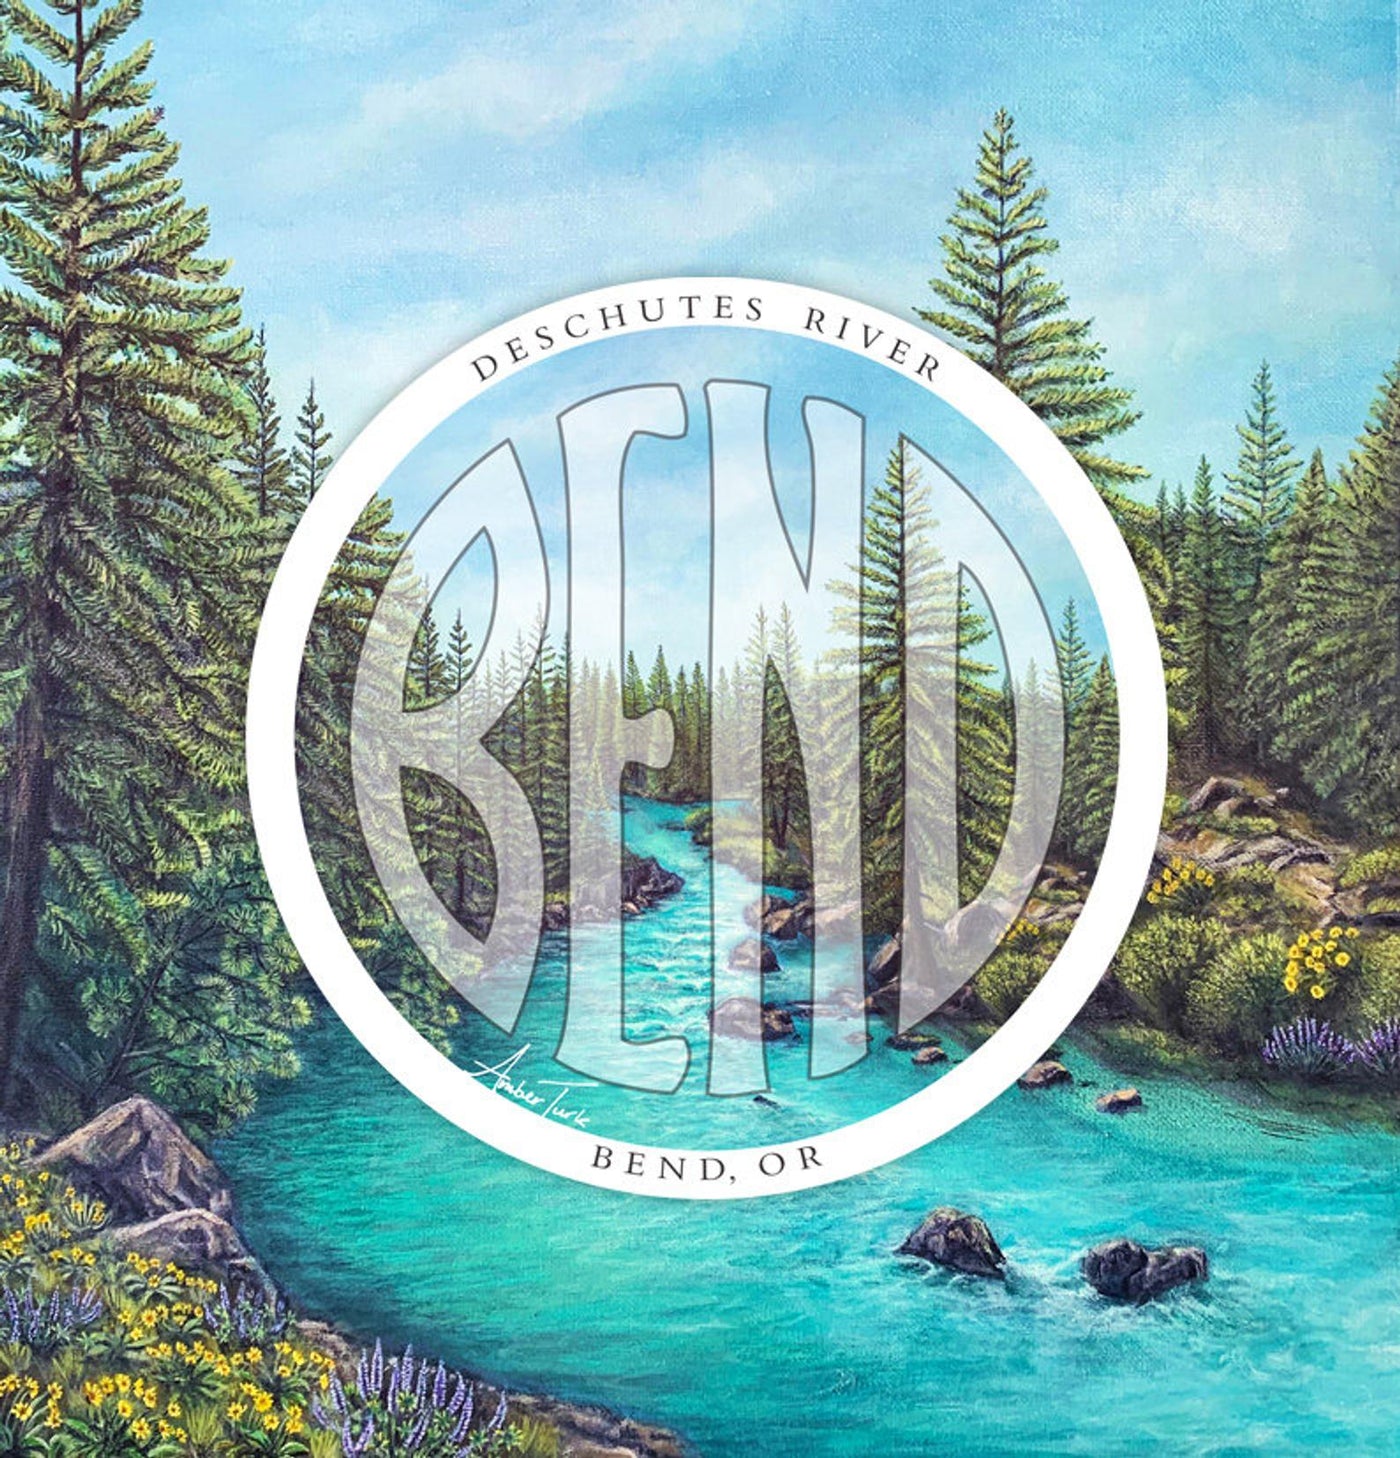 Deschutes River Bend Logo Sticker